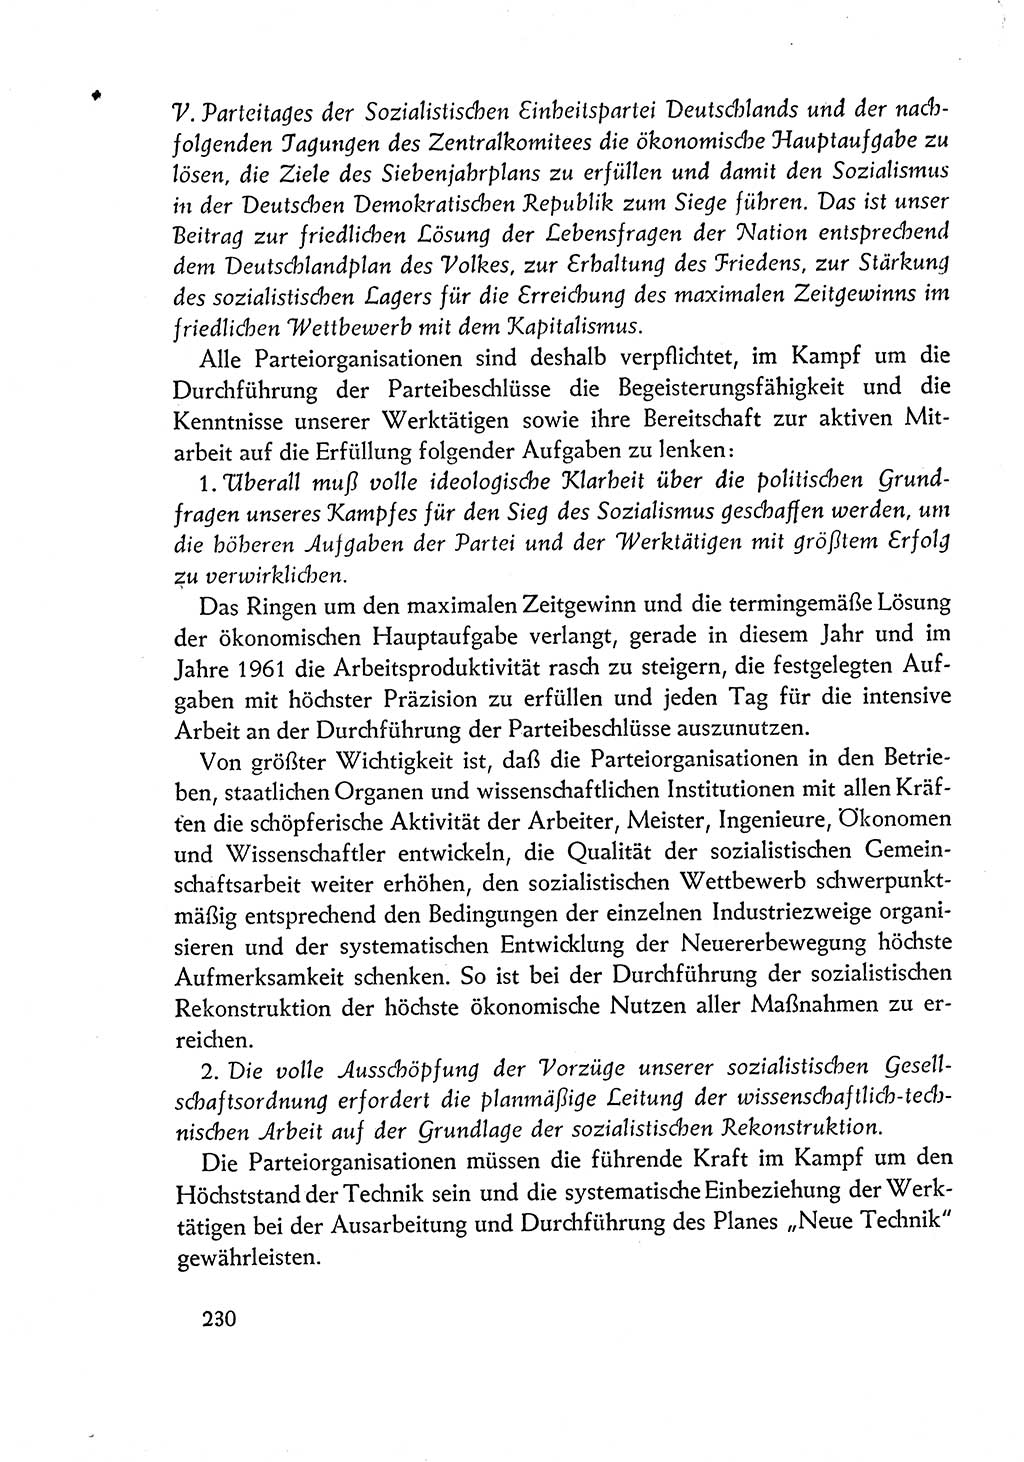 Dokumente der Sozialistischen Einheitspartei Deutschlands (SED) [Deutsche Demokratische Republik (DDR)] 1960-1961, Seite 230 (Dok. SED DDR 1960-1961, S. 230)